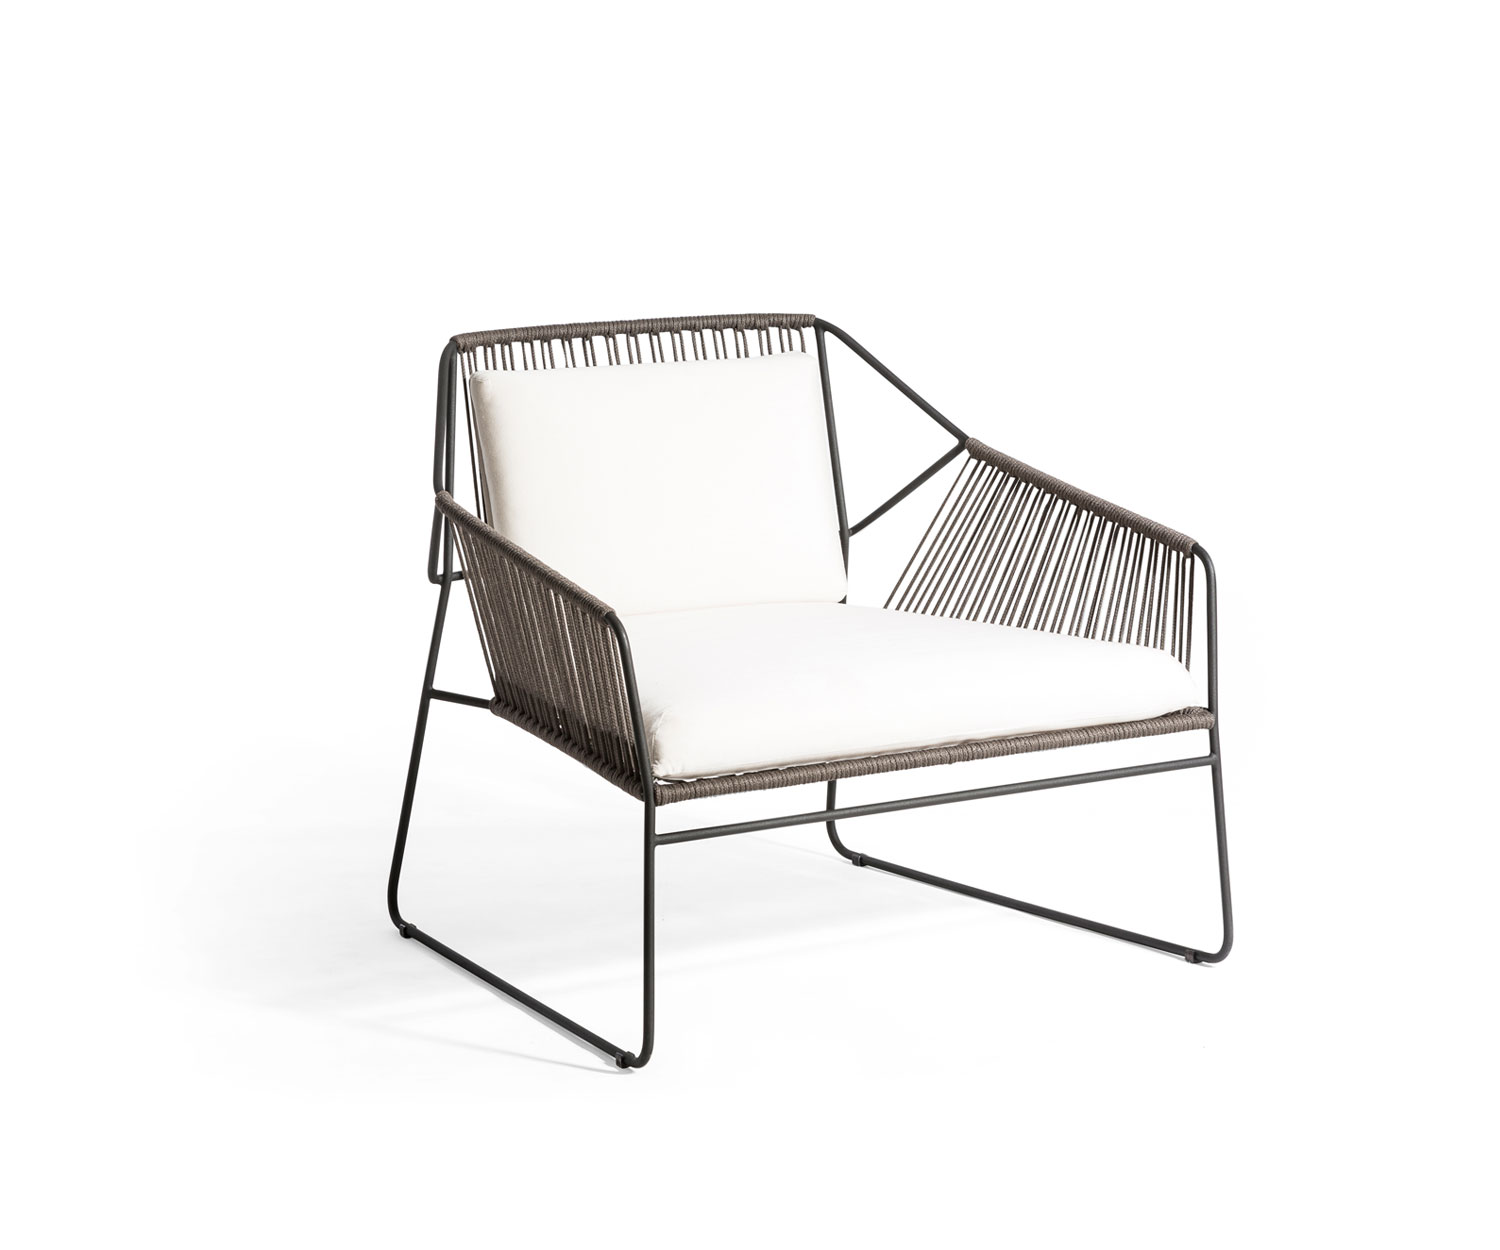 Oasiq Sandur Schnur design fauteuil met donkergrijs frame en wit zitkussen